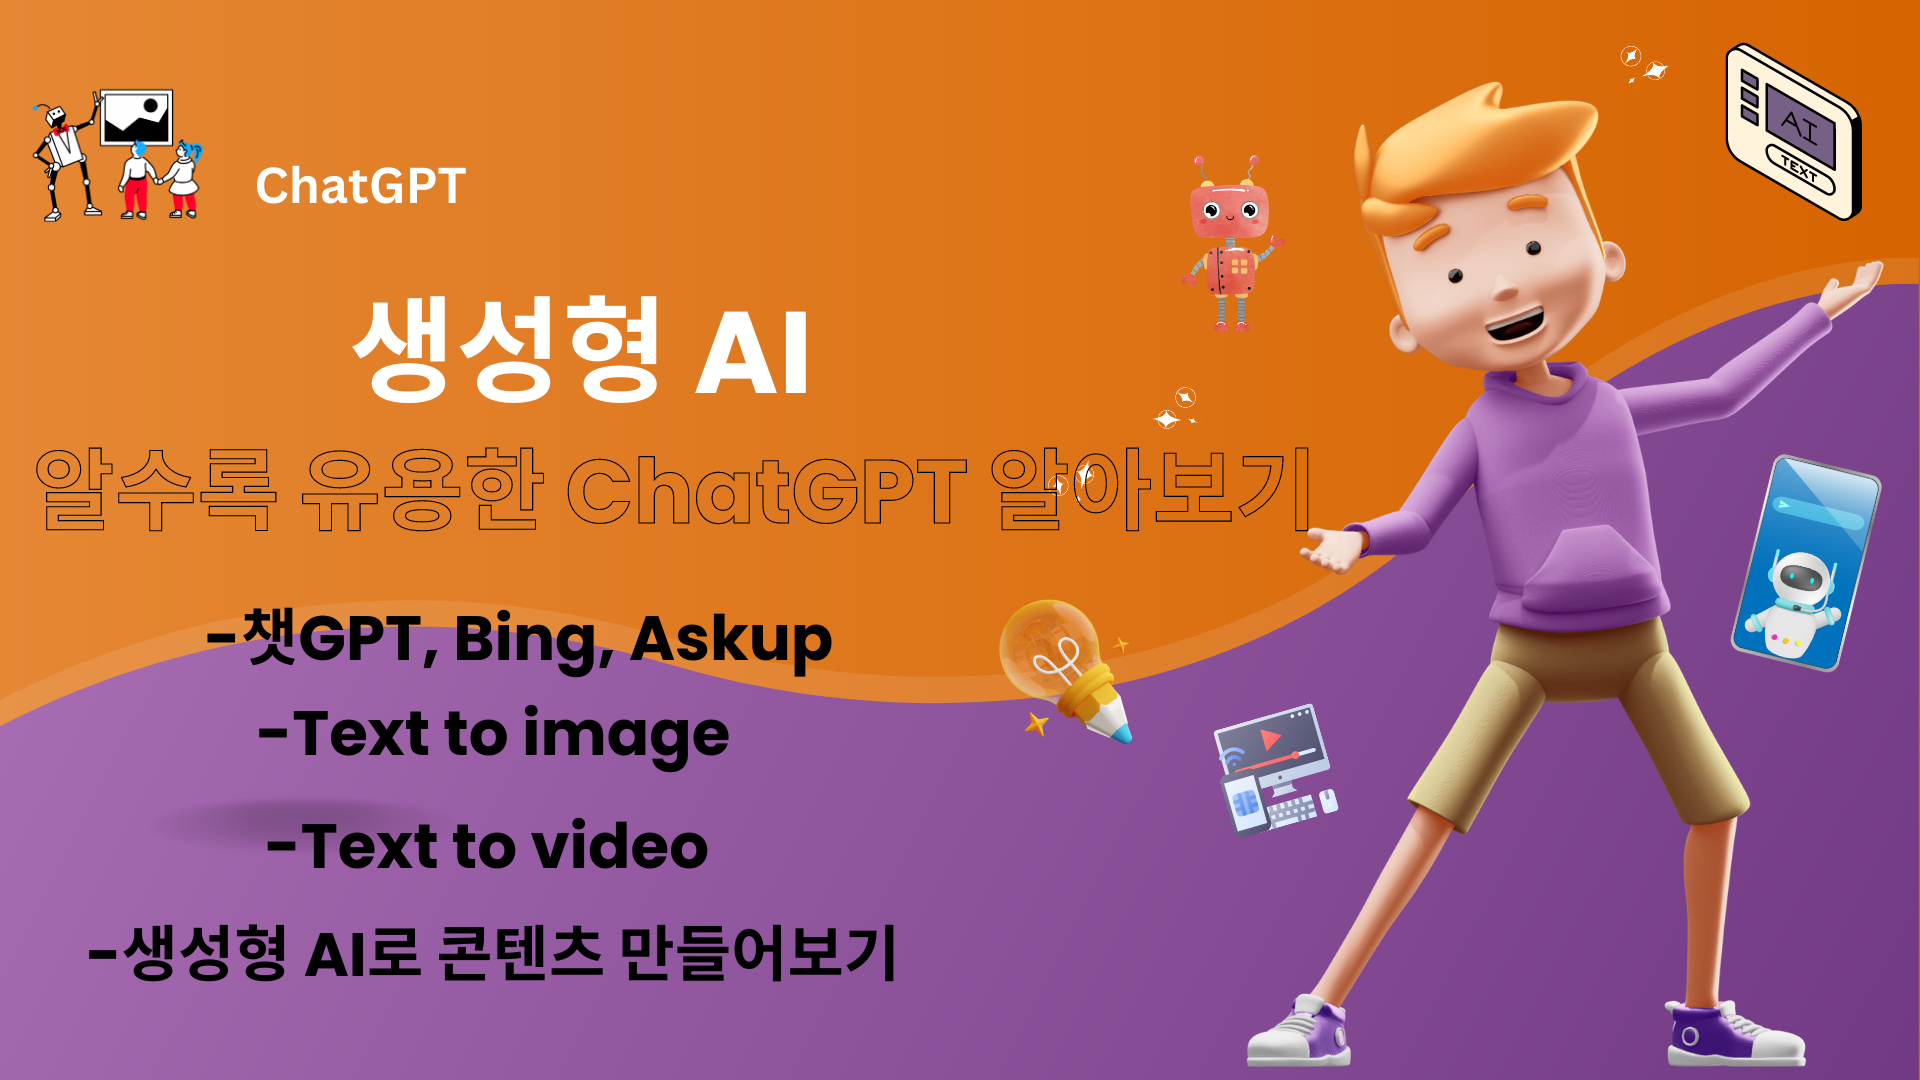 생성형 AI! 알수록 유용한 ChatGPT 알아보기 1기 (기초)